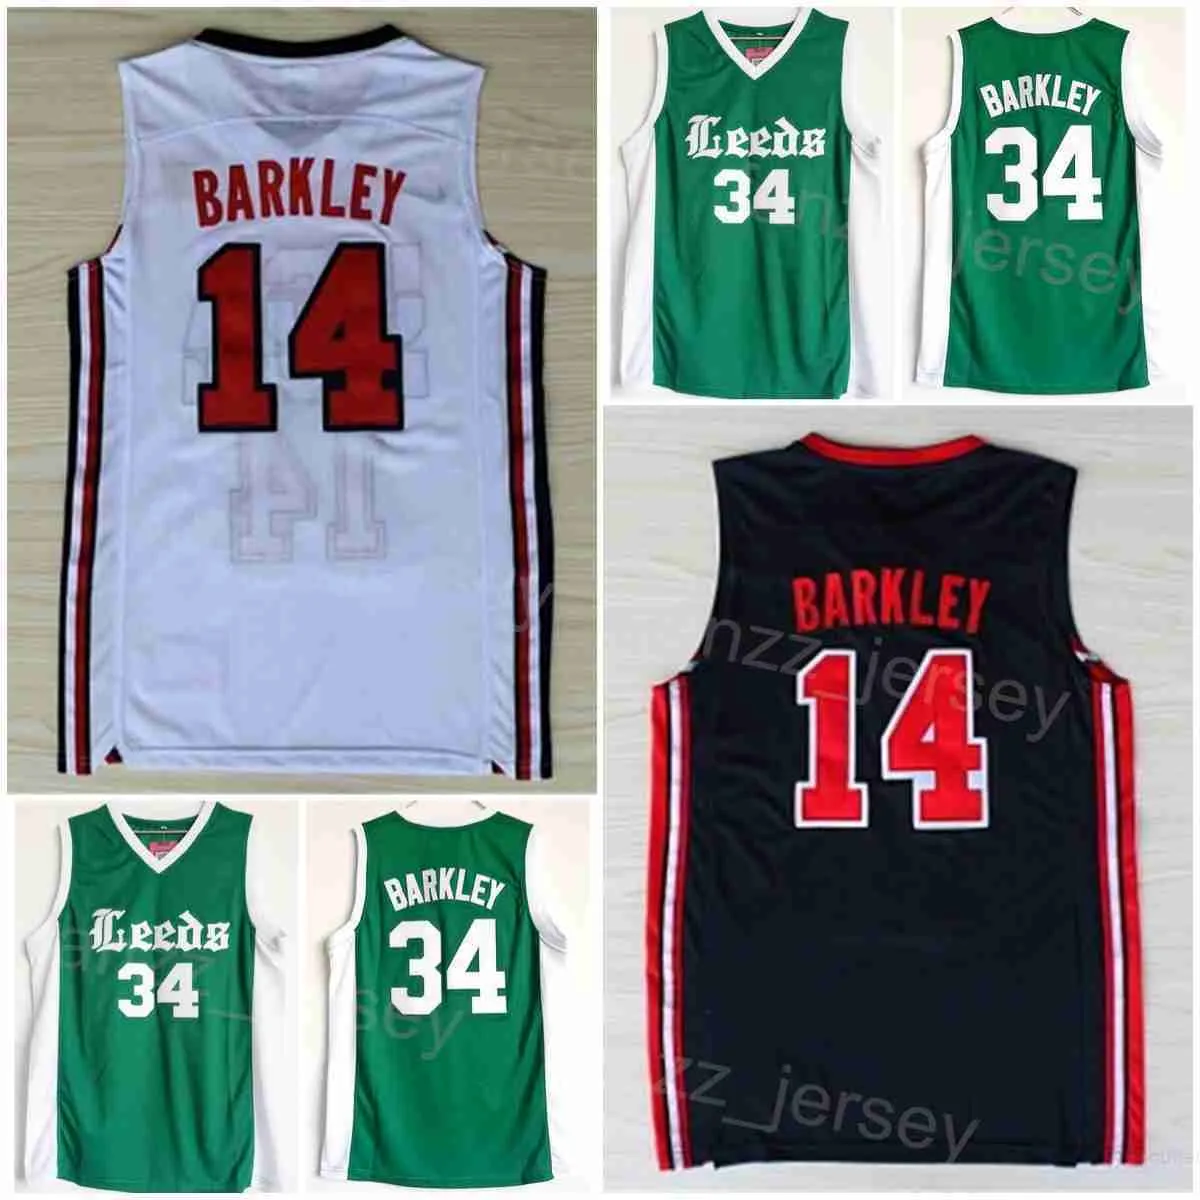 Koszykówka w szkole średniej 14 Charles Barkley Jerseys 34 Shirt College 1992 USA Dream Team One Sport University Drużyna oddychająca granatowa biała zielona zielona szwana mężczyzna NCAA